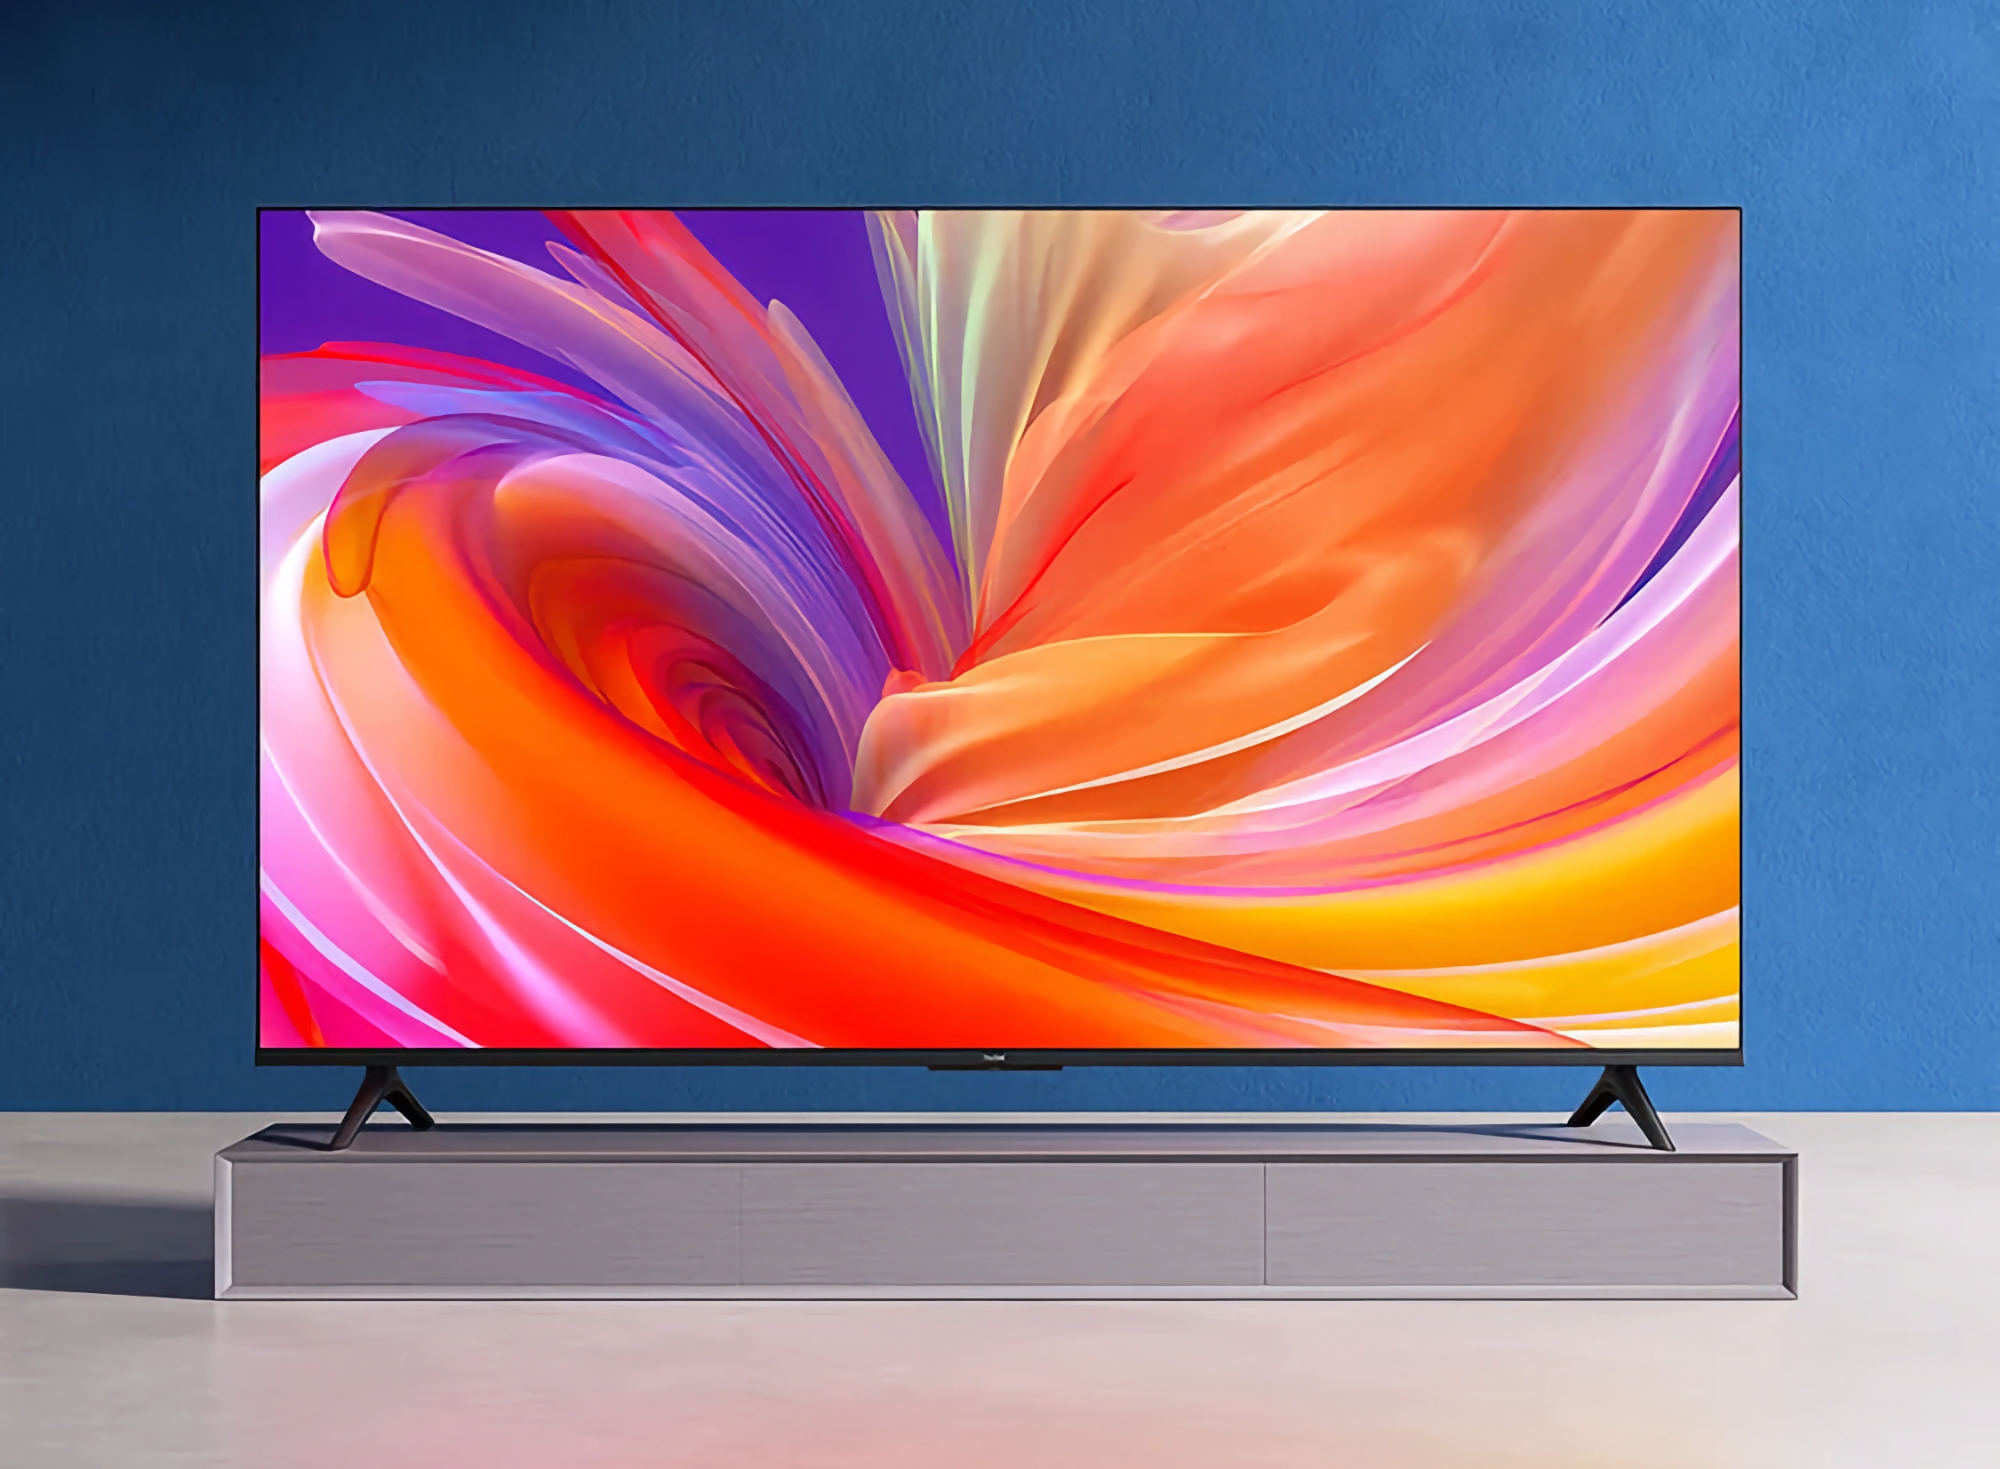 Xiaomi zaprezentowało gamę gamingowych telewizorów Redmi z ekranami o przekątnej od 50 do 65 cali, rozdzielczością 4K, obsługą 120 Hz i cenami zaczynającymi się od 193 USD.